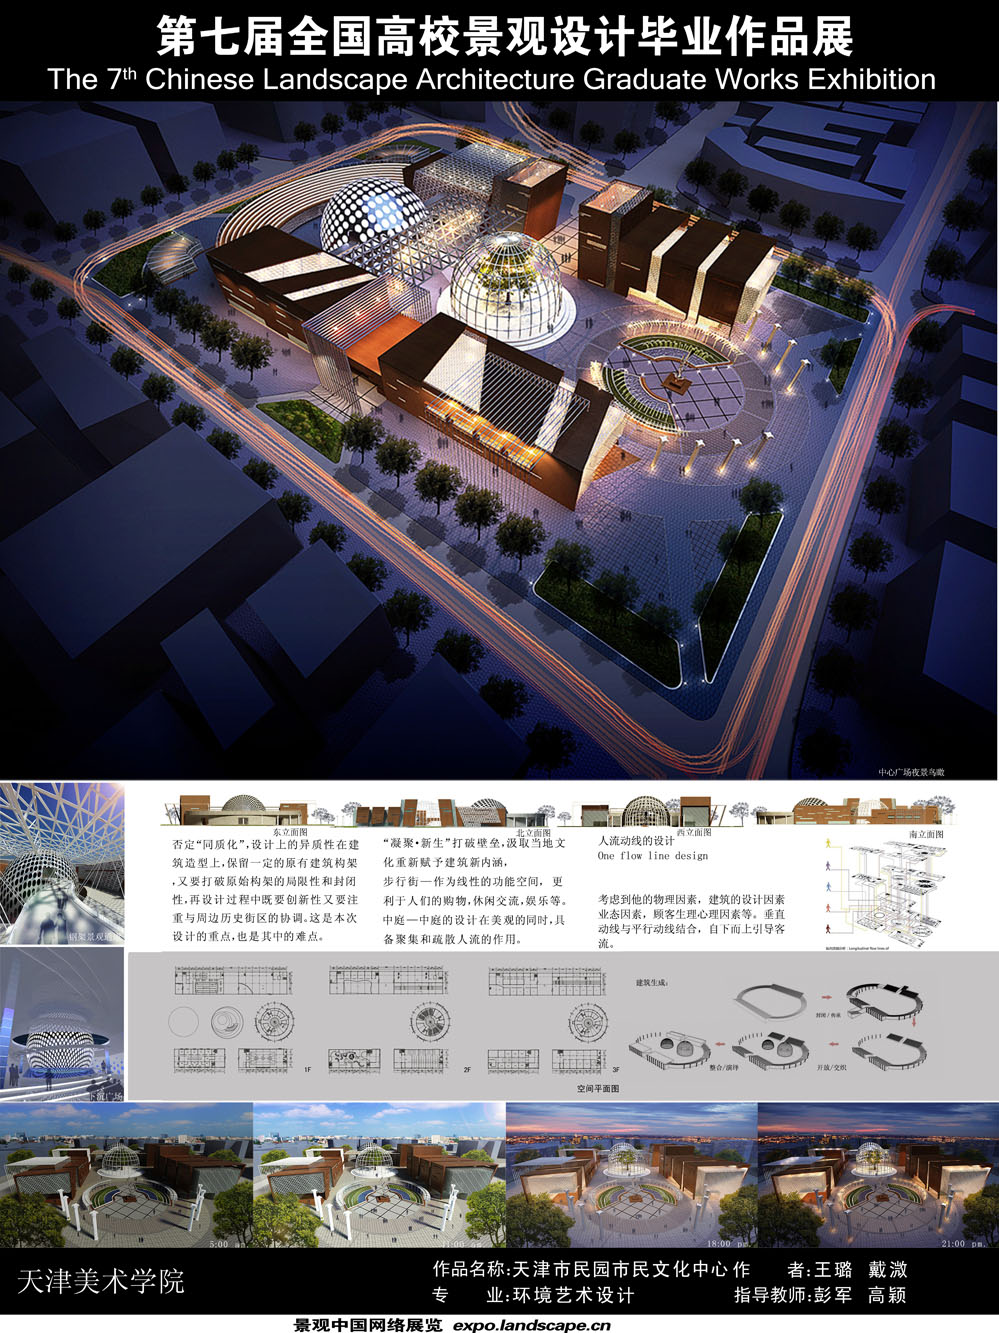 传承 交织 演绎——天津市民园市民文化中心-2